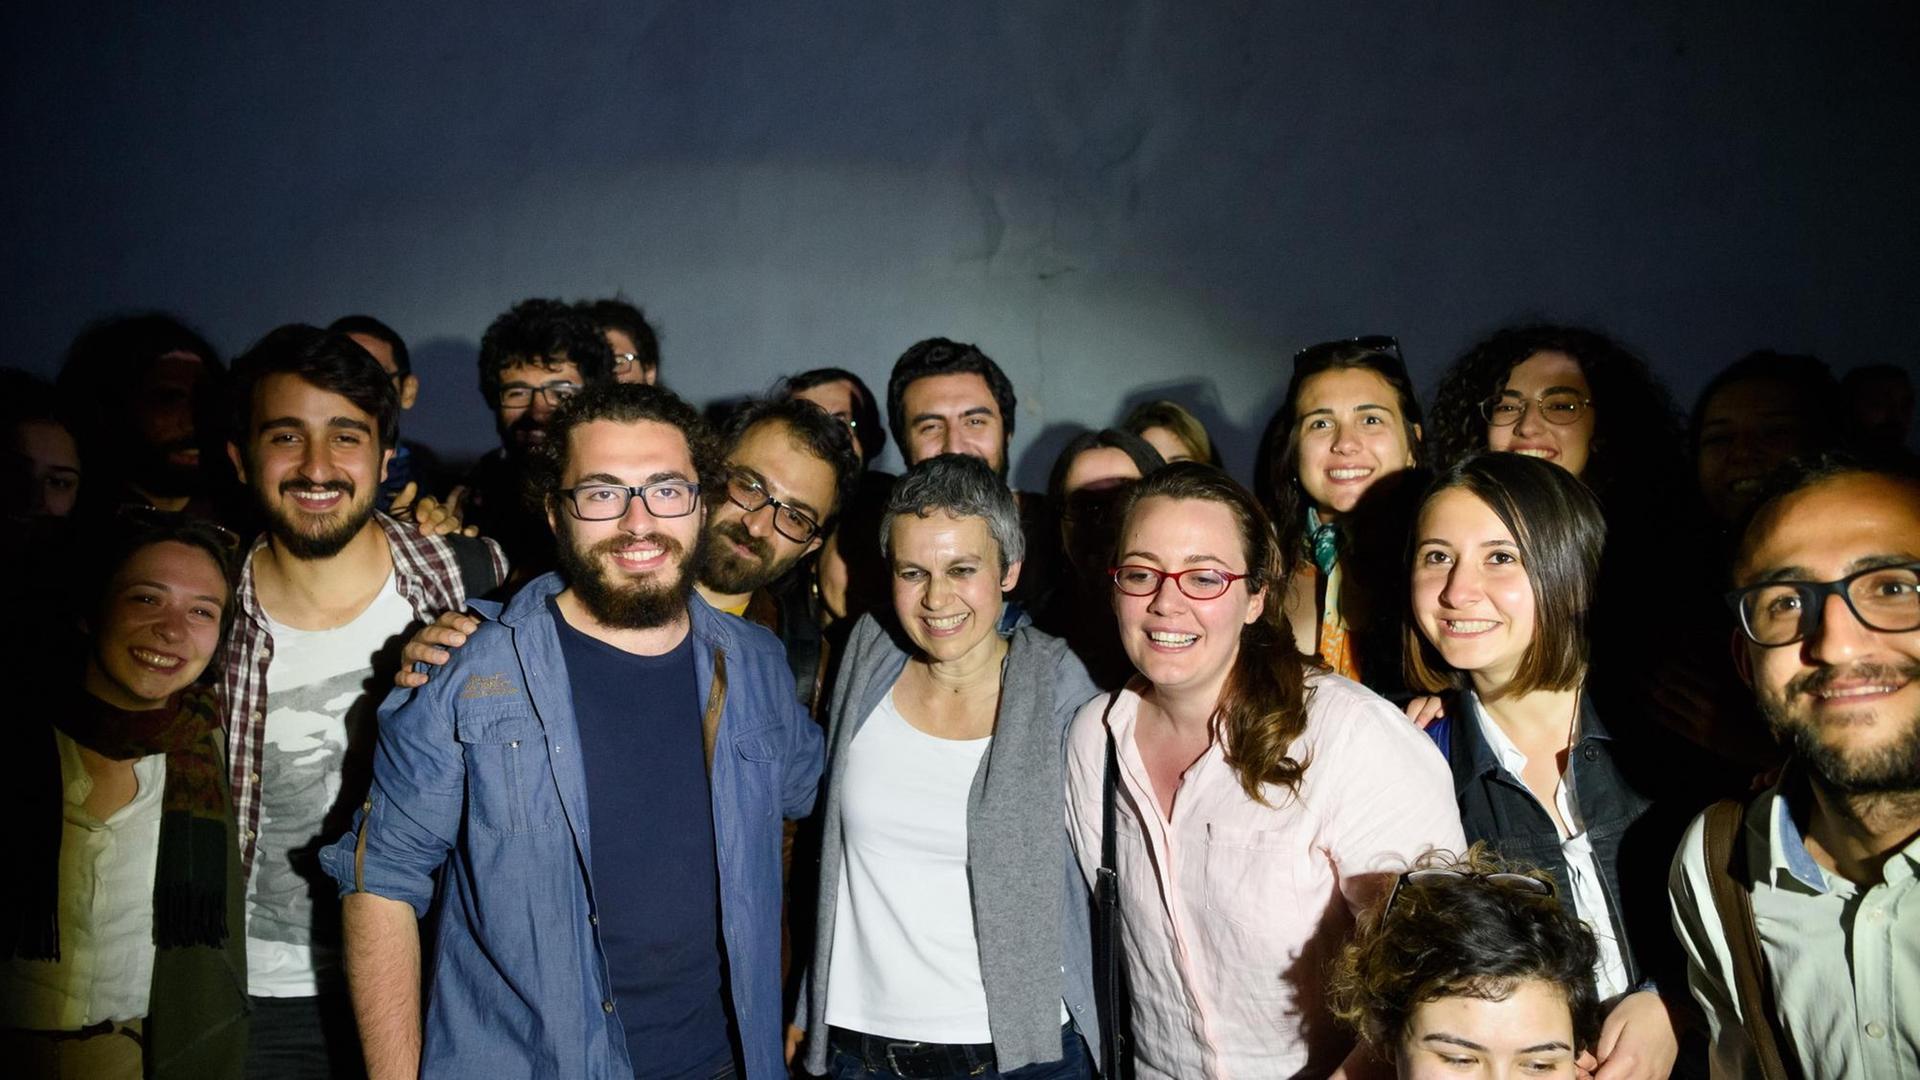 Türkische Akademiker nach dem ersten Prozesstag gegen sie am 22. April 2016 in Istanbul. Sie unterzeichneten die Petition "Akademiker für den Frieden" - und mussten sich dafür vor Gericht verantworten.